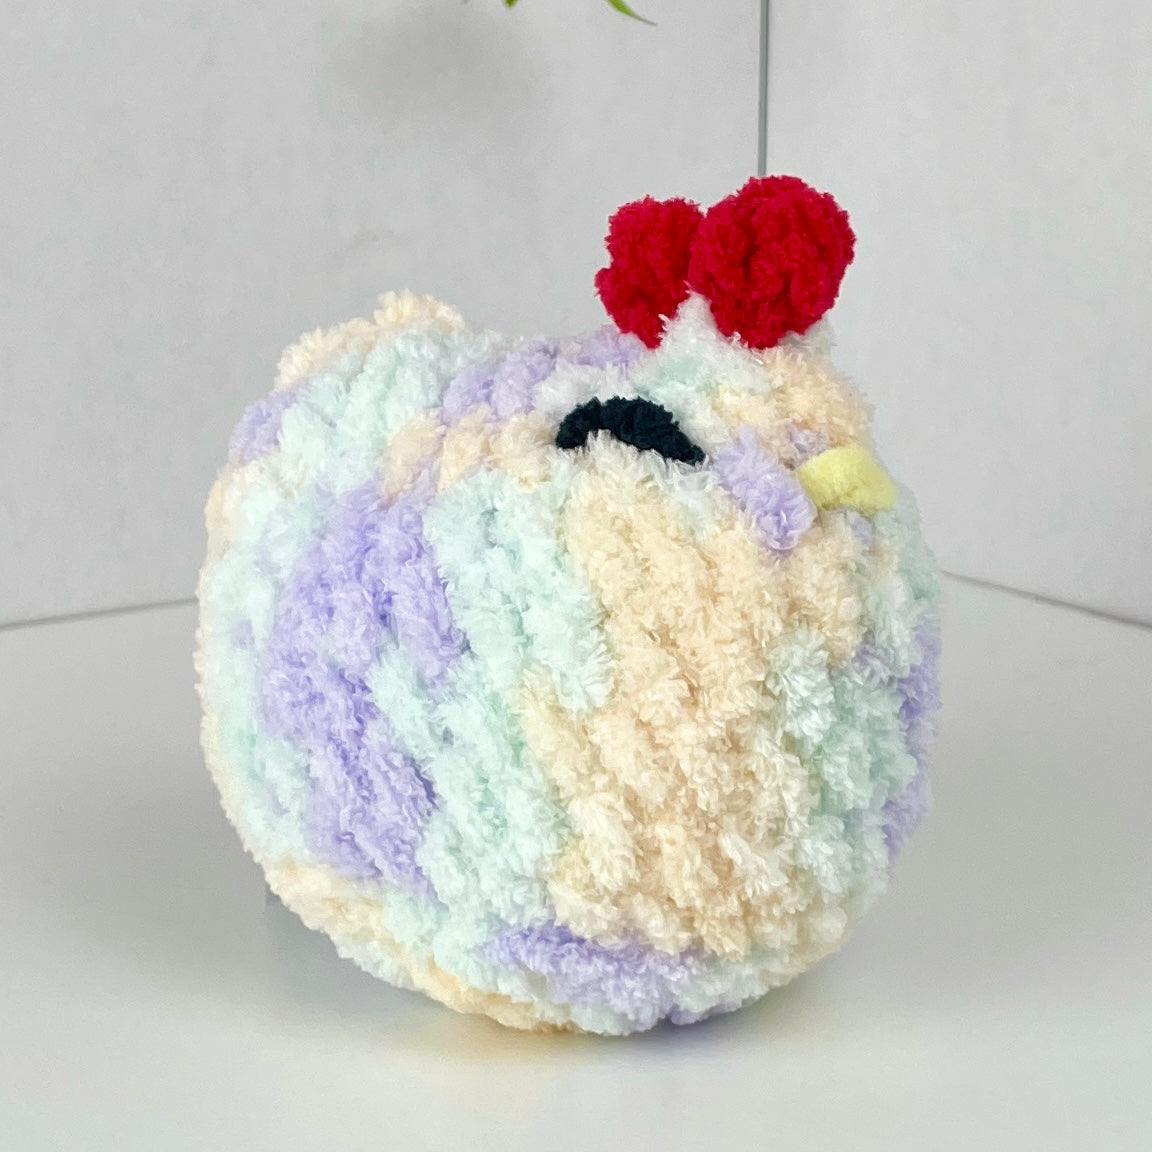 Peluche Gallina 10cm, afelpado, tejido crochet artesanal, amigurumi